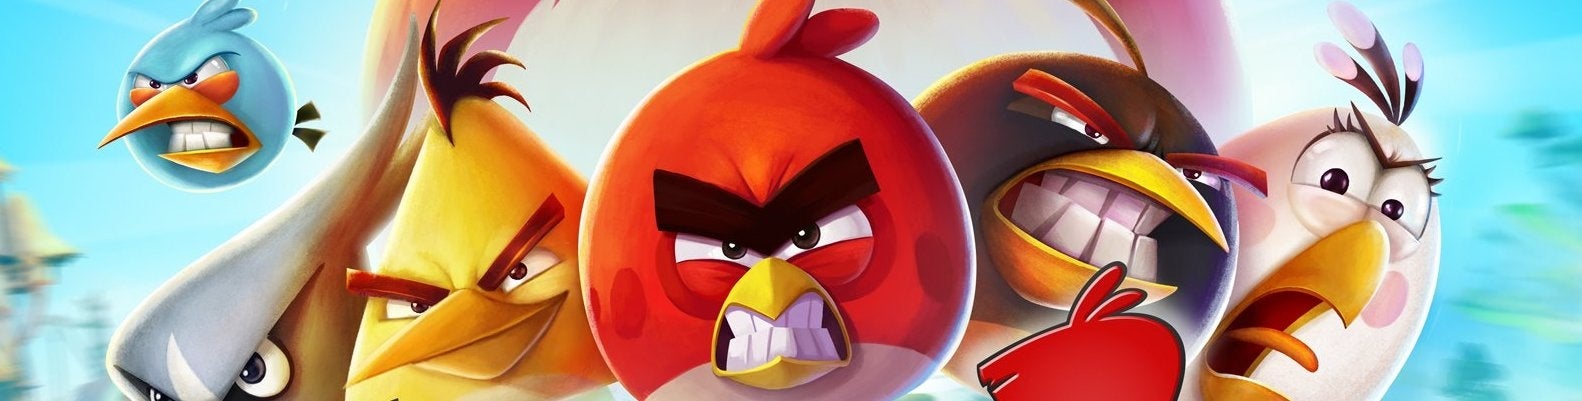 Immagine di Angry Birds 2: il ritorno degli uccelli assassini - recensione